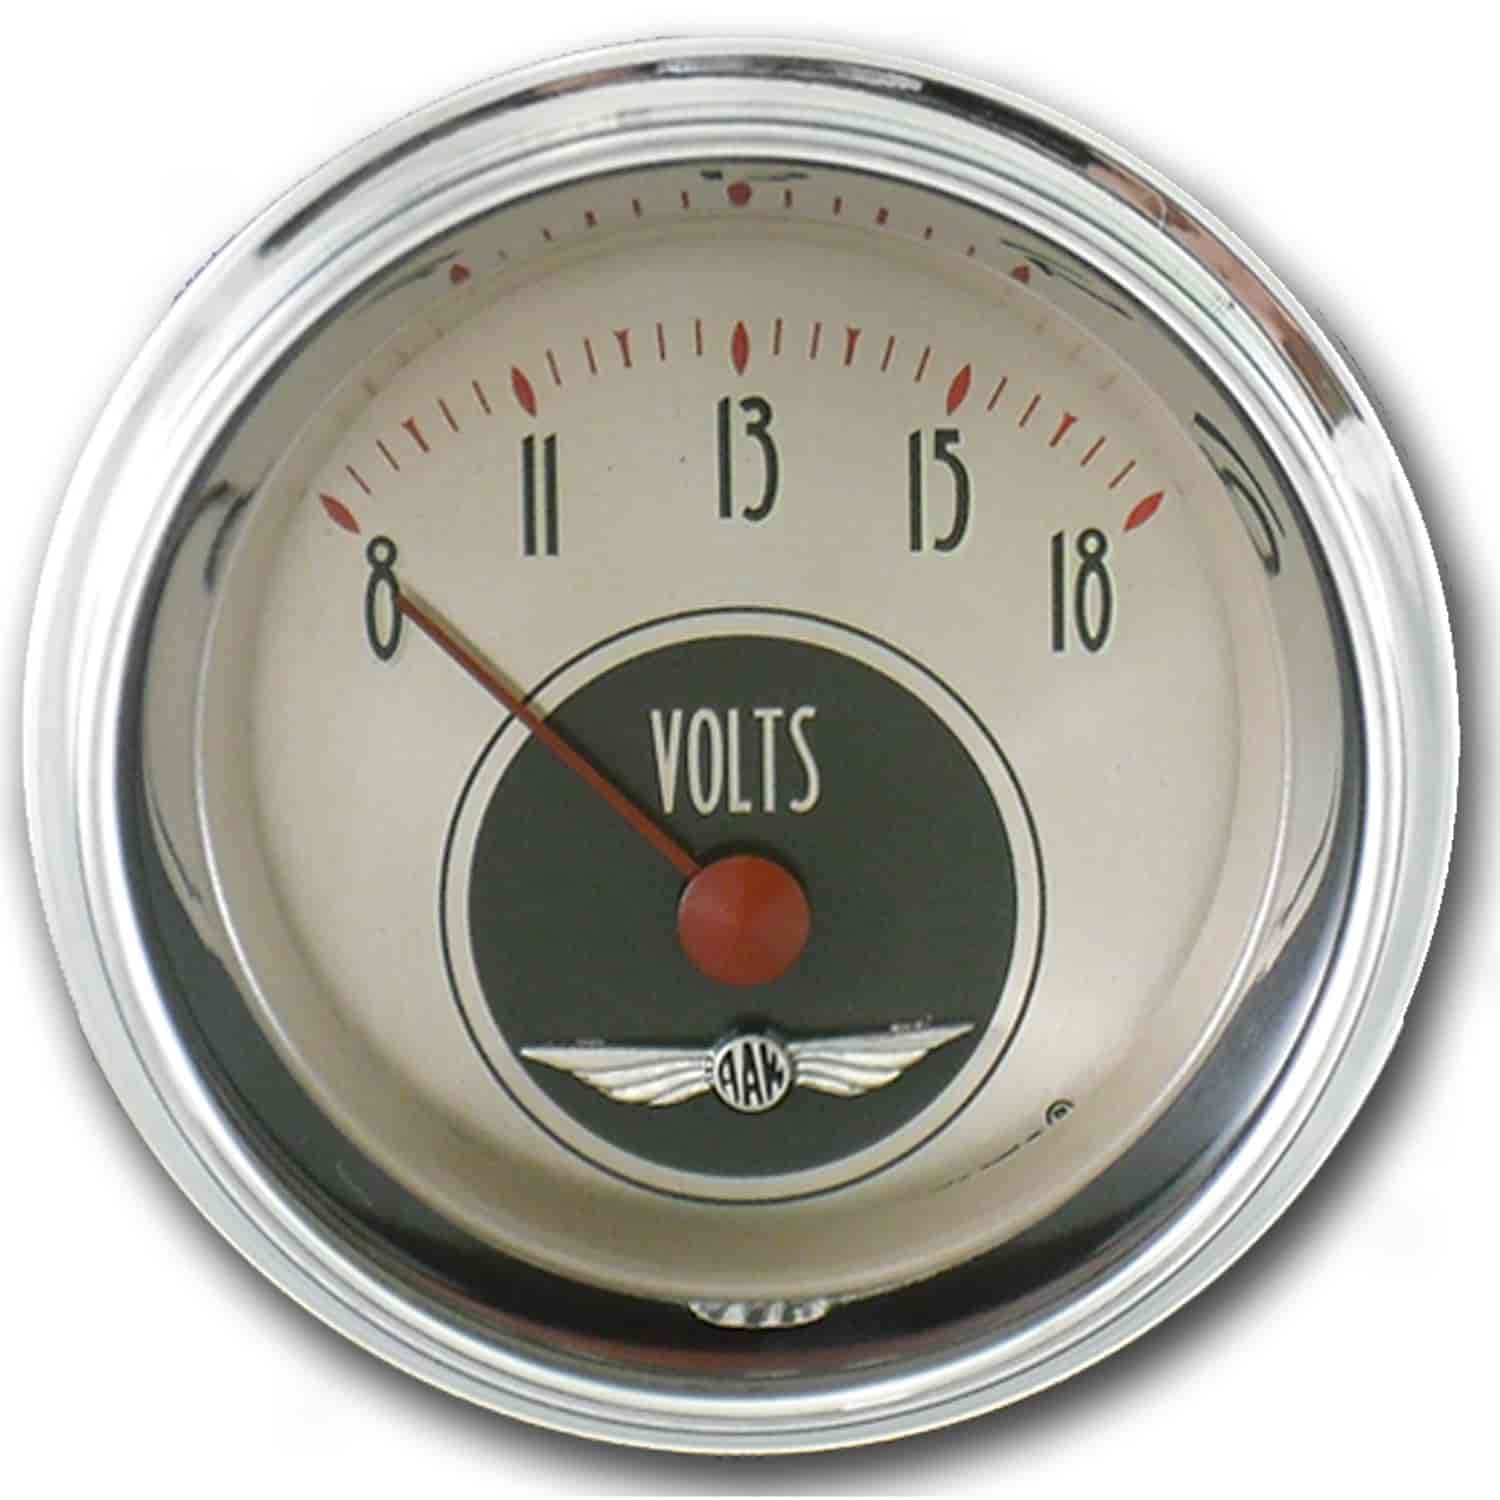 All American Nickel Voltmeter 2-1/8" Electrical